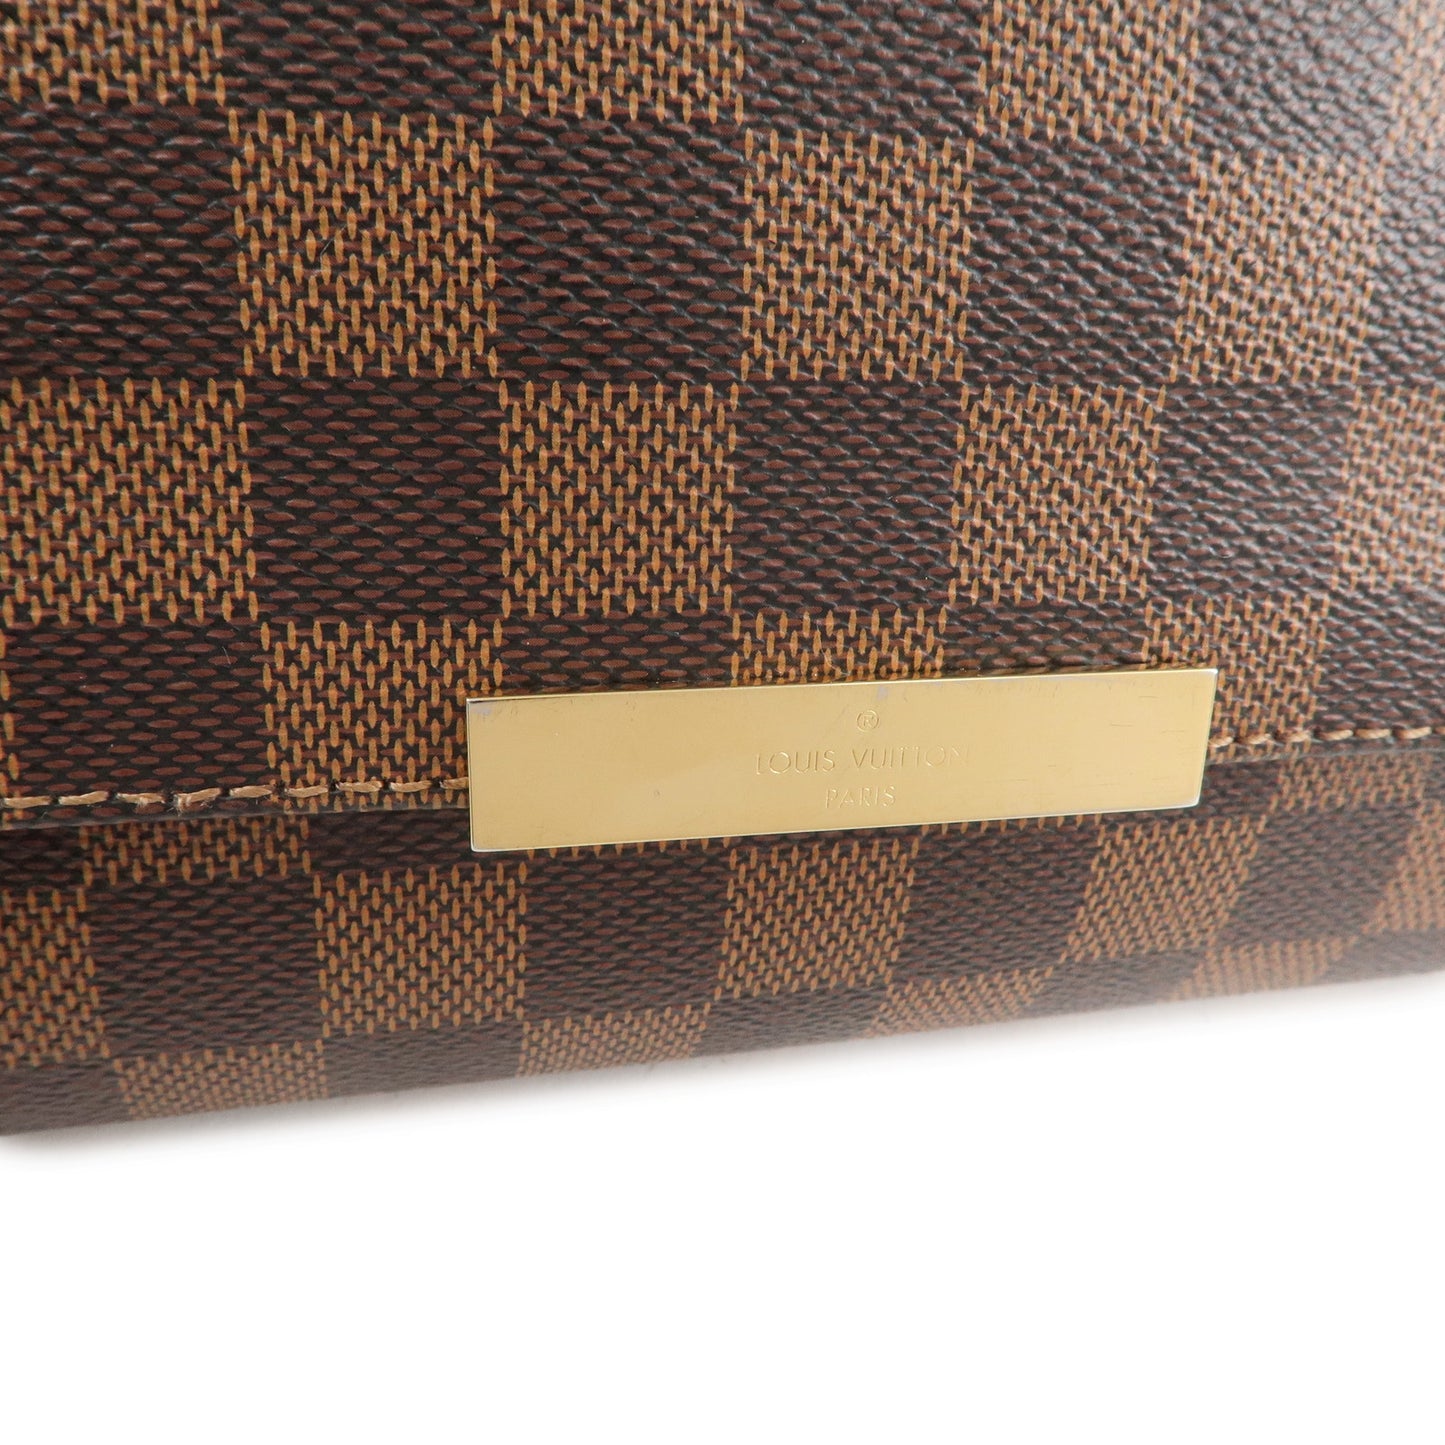 Louis Vuitton Damier Favorite MM N41129 Shoulder Bag Brown Free Shipping